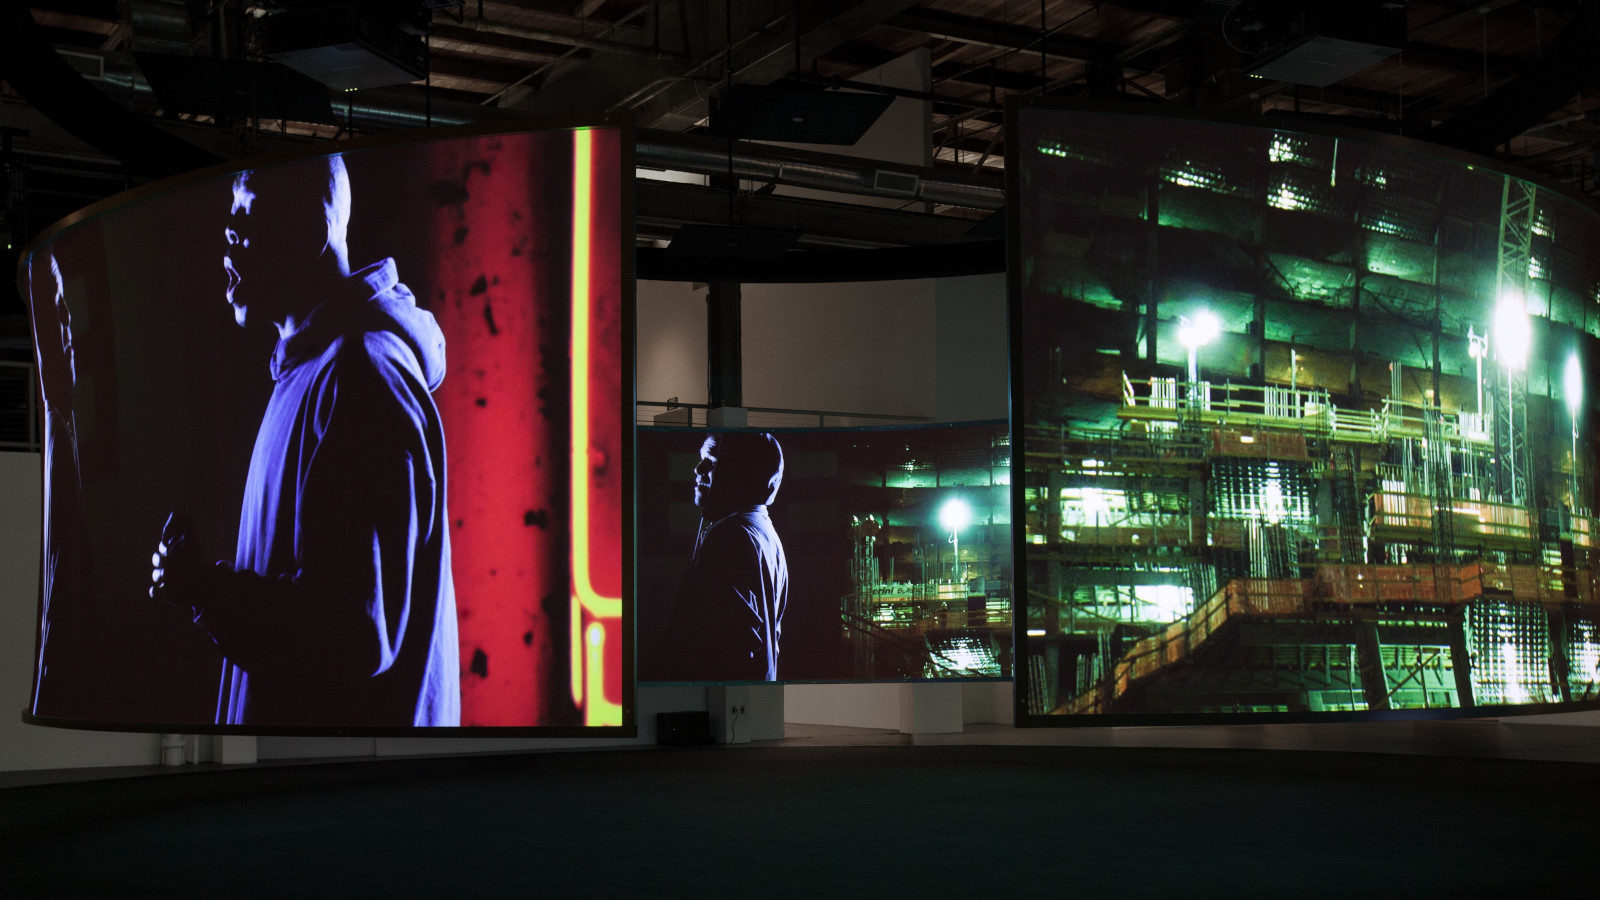 Kuvassa on Doug Aitkenin teos, jossa etualalla seisoo mies hupparissa ja vieressä on pienempi kuva miehestä. Molemmat ovat puoliksi selin. Taustalla näkyy yövalaistua modernin lasi-ikkunaisen rakennuksen seinää.